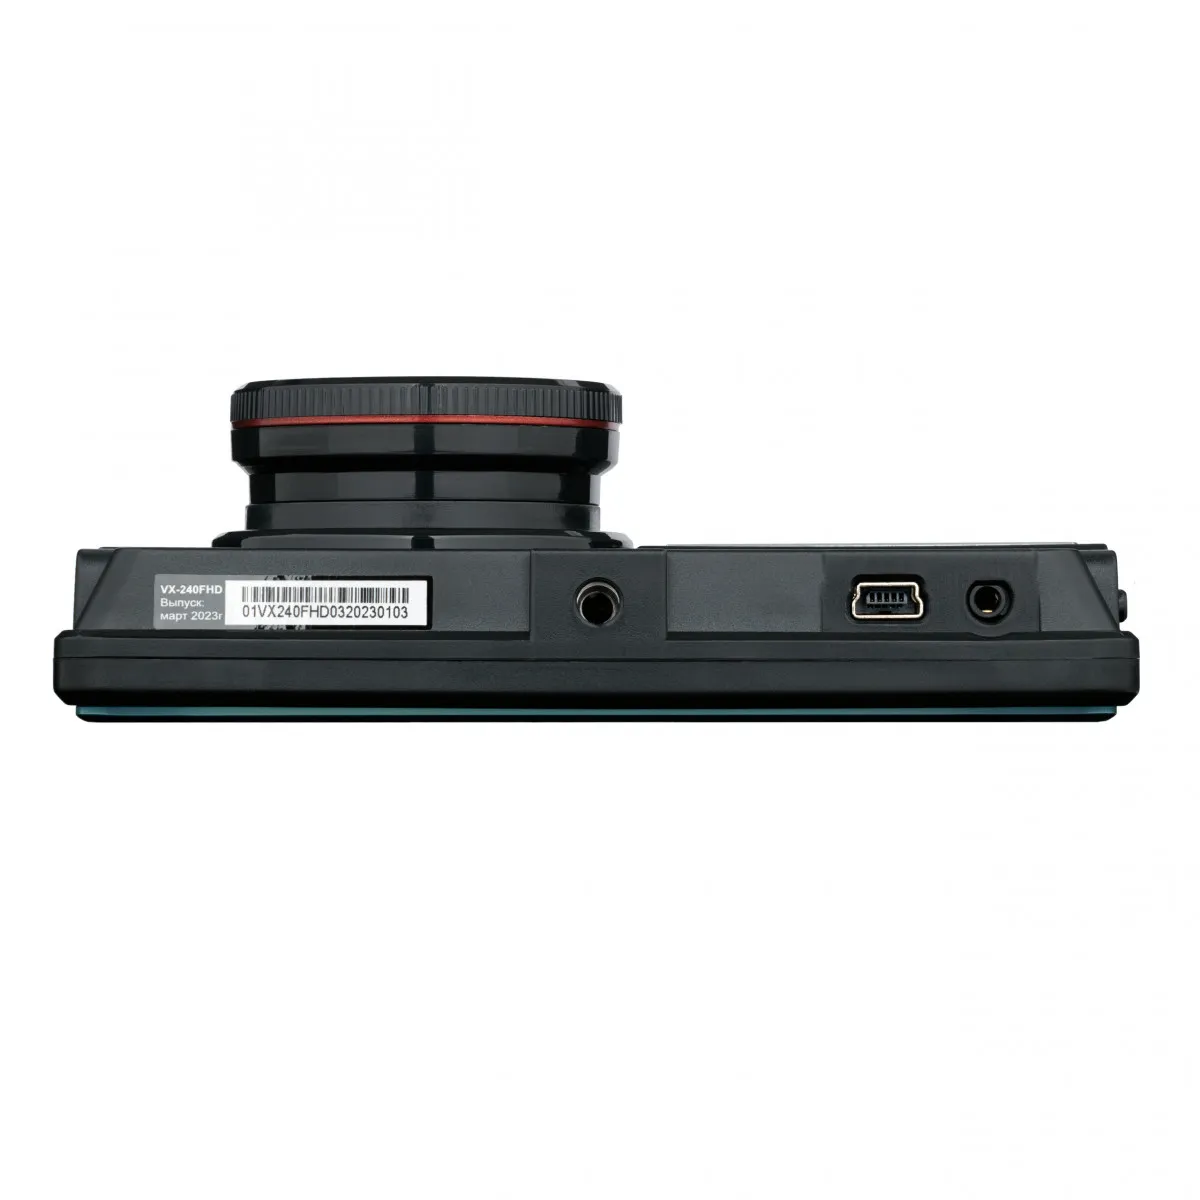 INTEGO VX-240 FHD videoregistrator 32GB xotira kartasi bilan#5